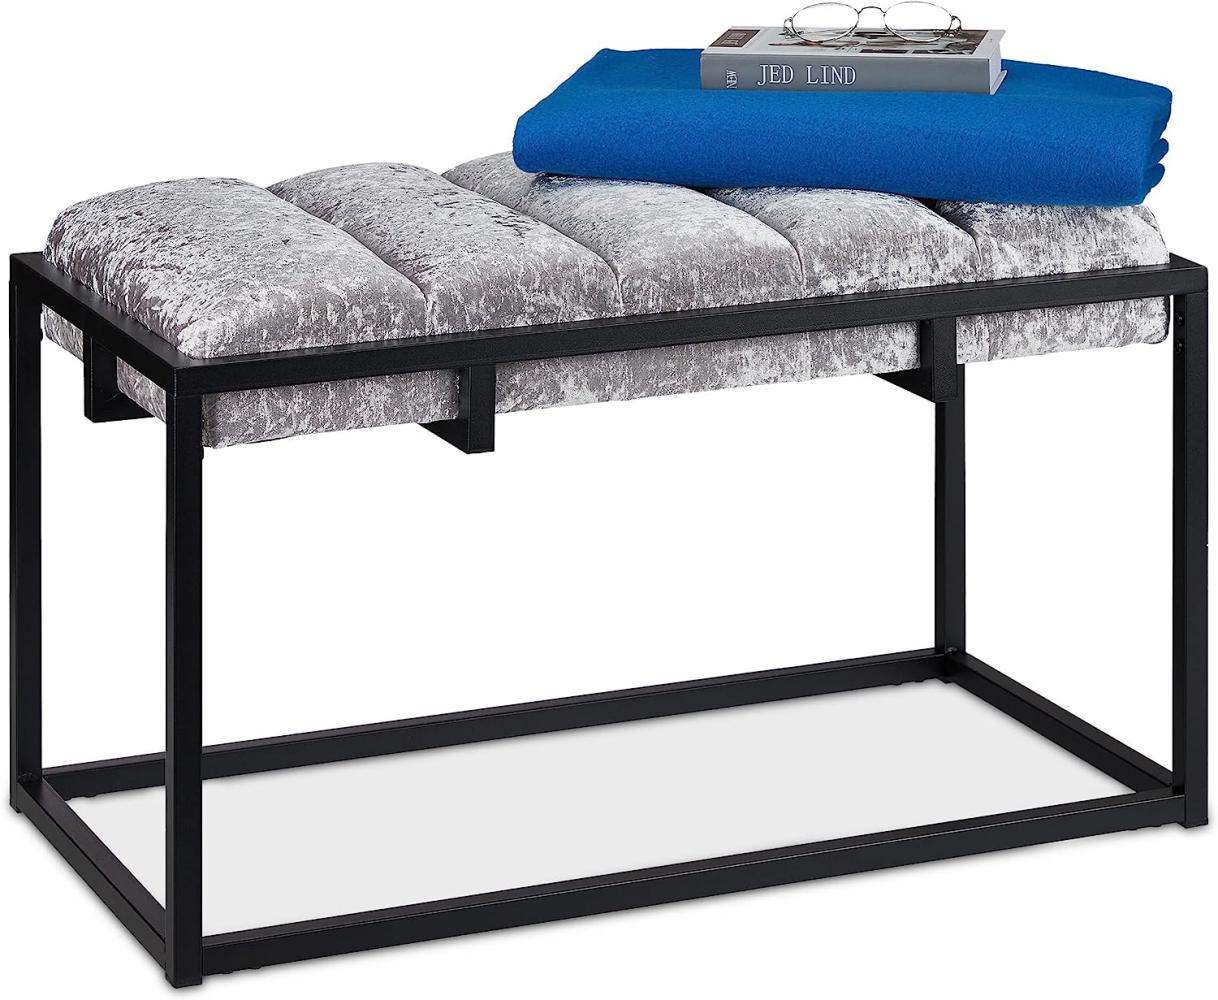 Relaxdays Sitzbank, gepolsterte Flurbank mit Samtbezug, HxBxT: 47 x 80 x 40 cm, Metall, Elegante Bettbank, grau schwarz 10038529 Bild 1